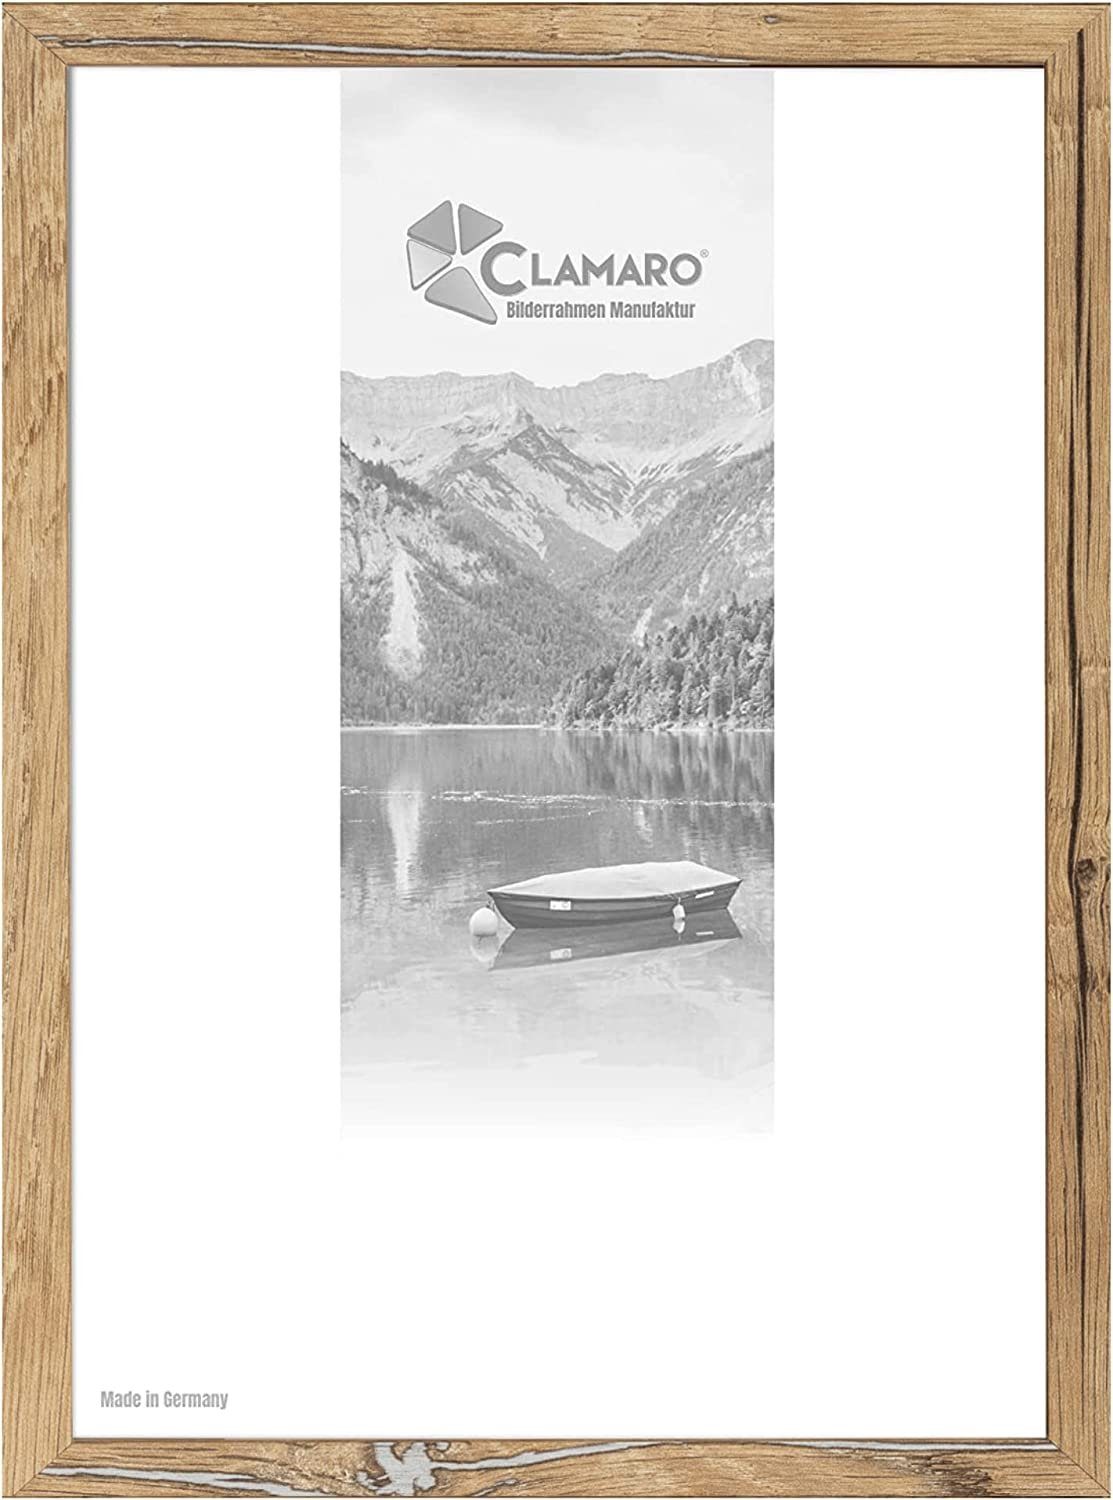 Clamaro Bilderrahmen Bilderrahmen Eiche Altholz CLAMARO Collage nach Maß FSC® Holz Modern eckig M3016 20x20 in Eiche Altholz